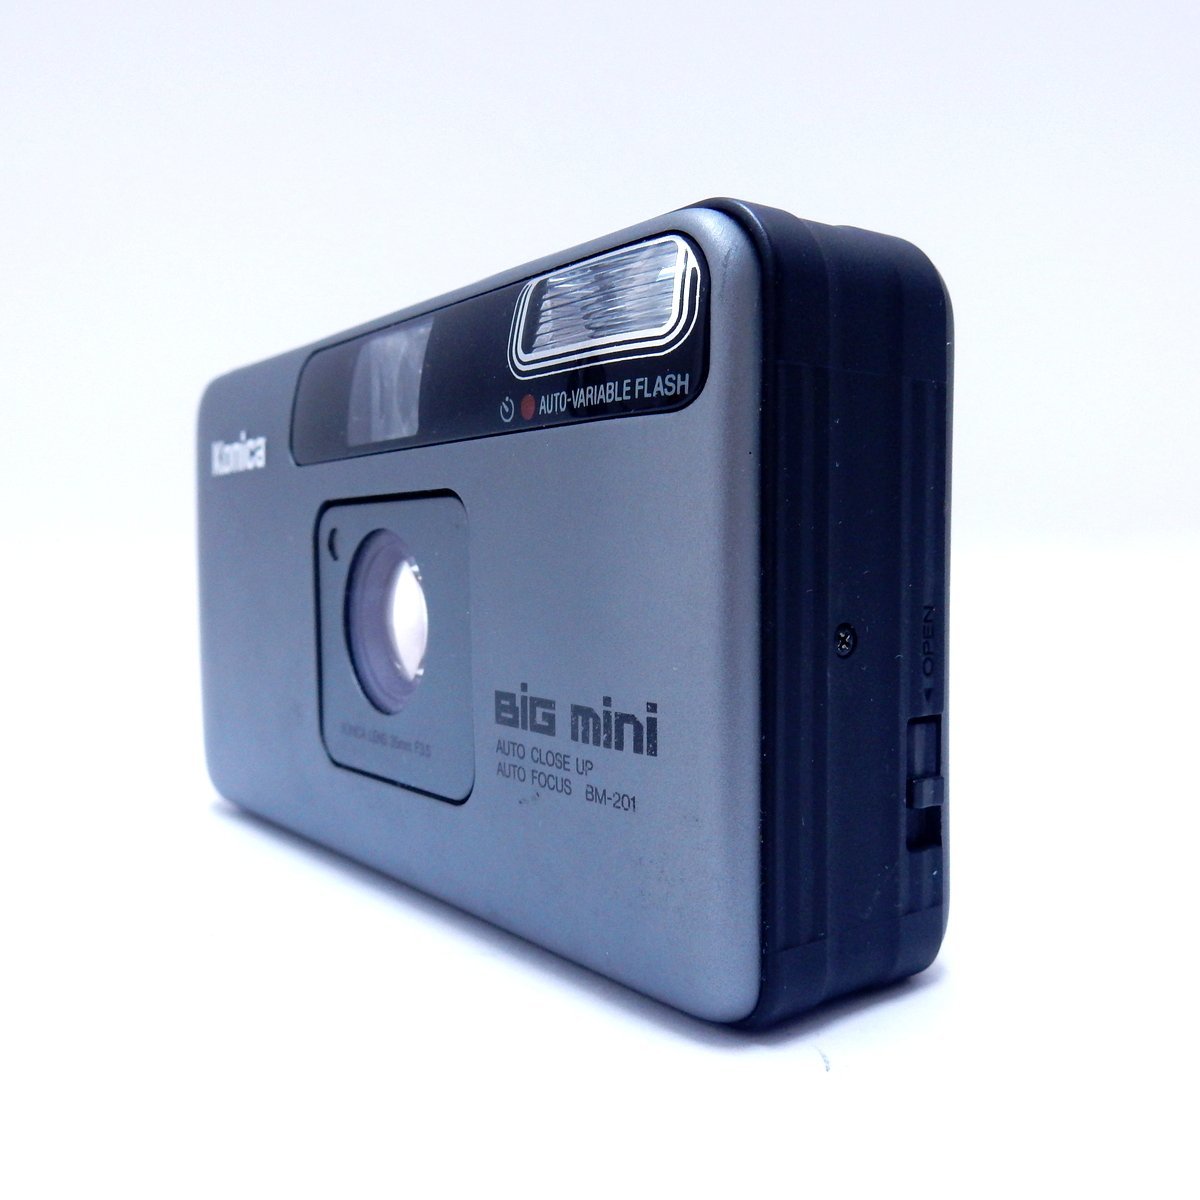 Konica コニカ BiG mini ビッグミニ フィルムカメラ コンパクトカメラ